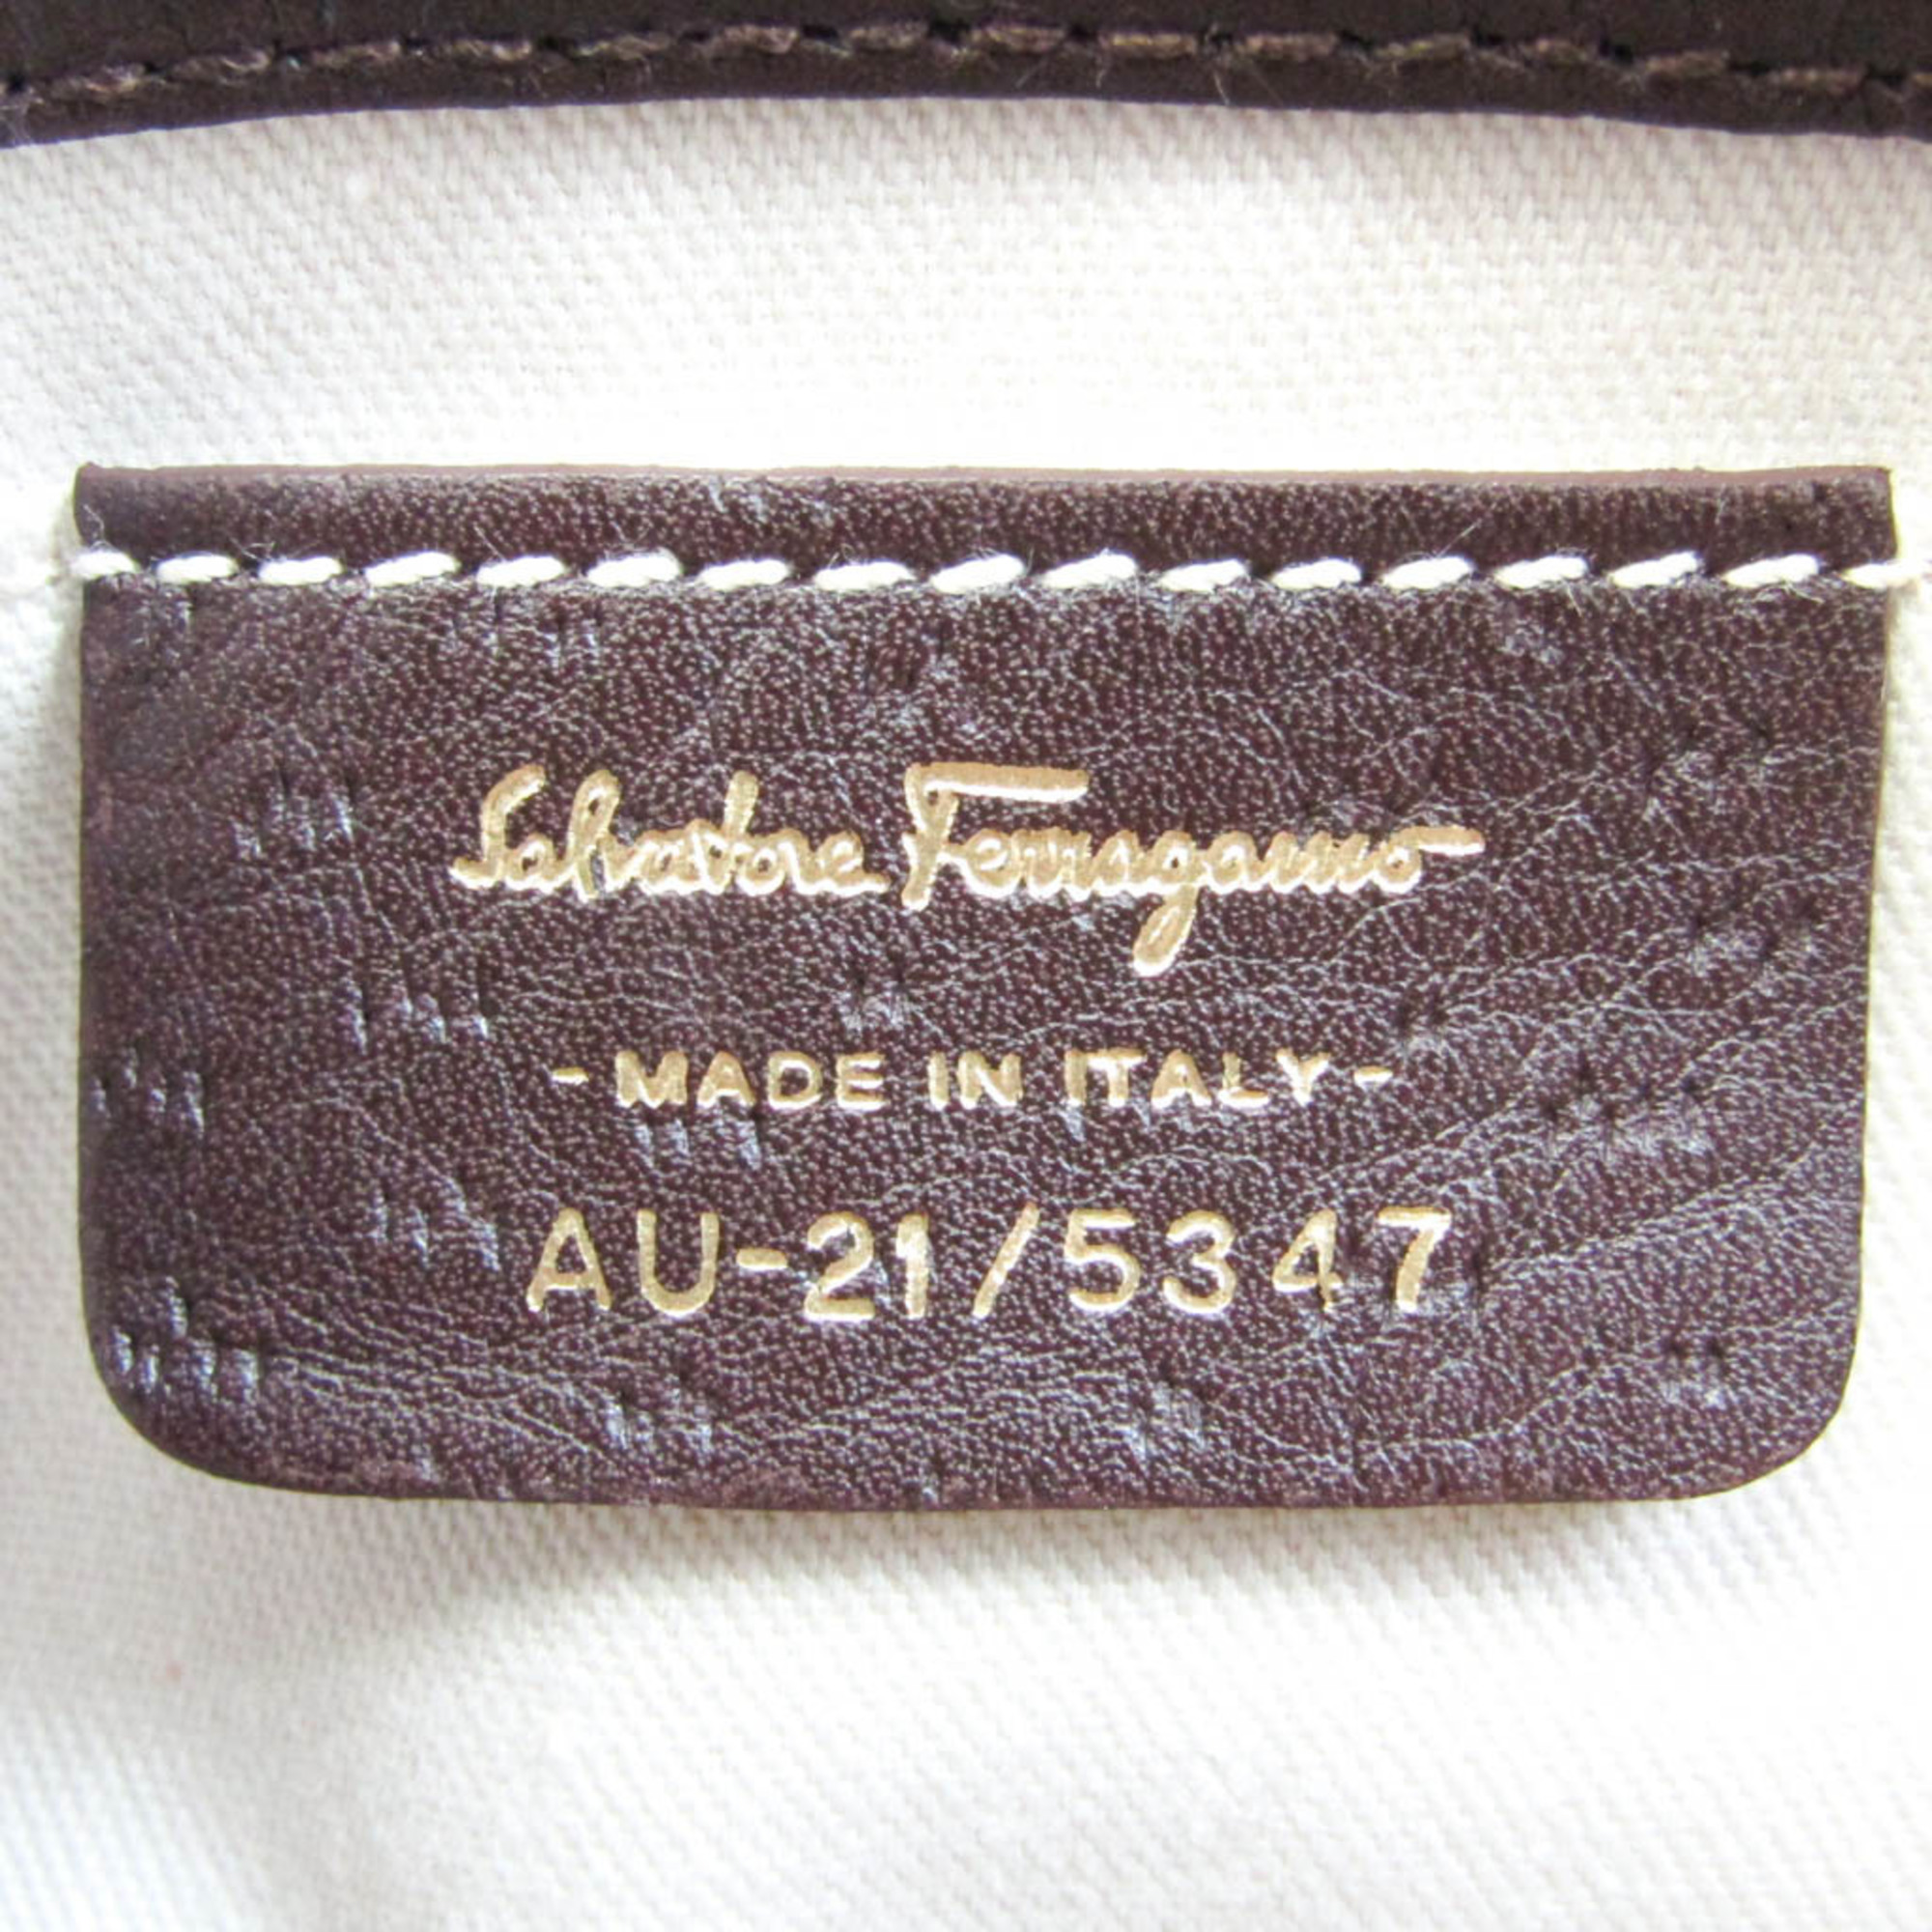 Salvatore Ferragamo AU-21 5347 Women's Leather,Nylon Shoulder Bag Dark Brown,Multi-color